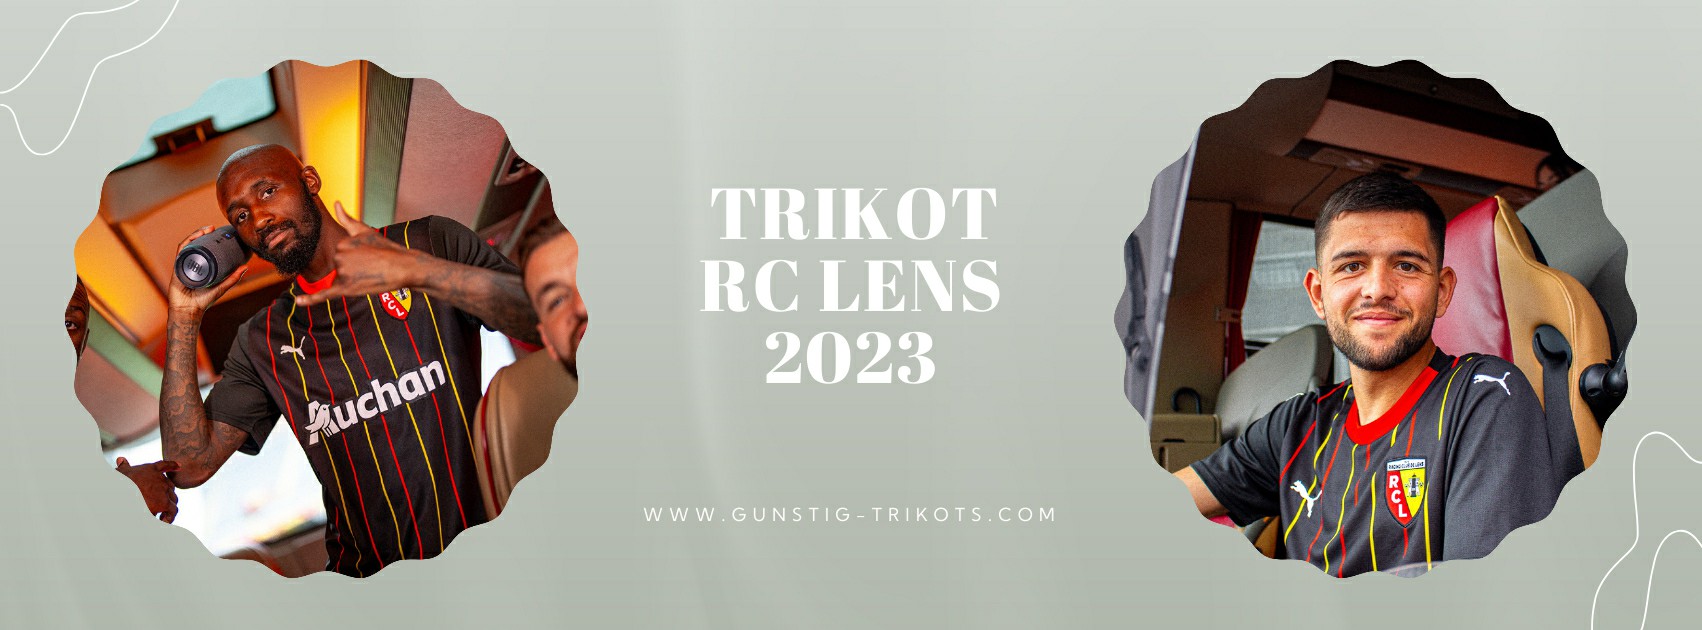 RC Lens Trikot 2023-2024